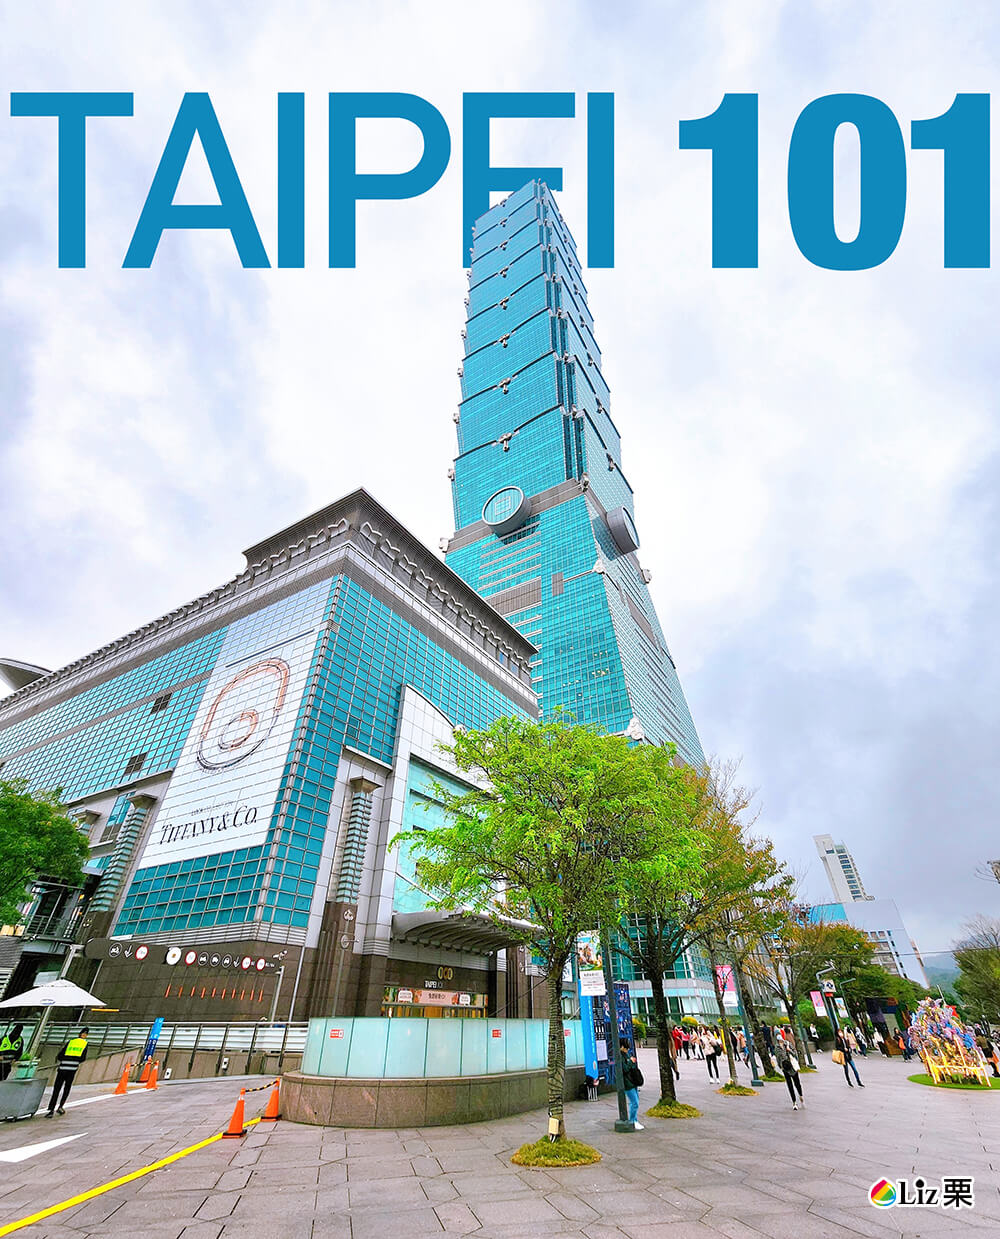 Taipei 101, 台北101大樓